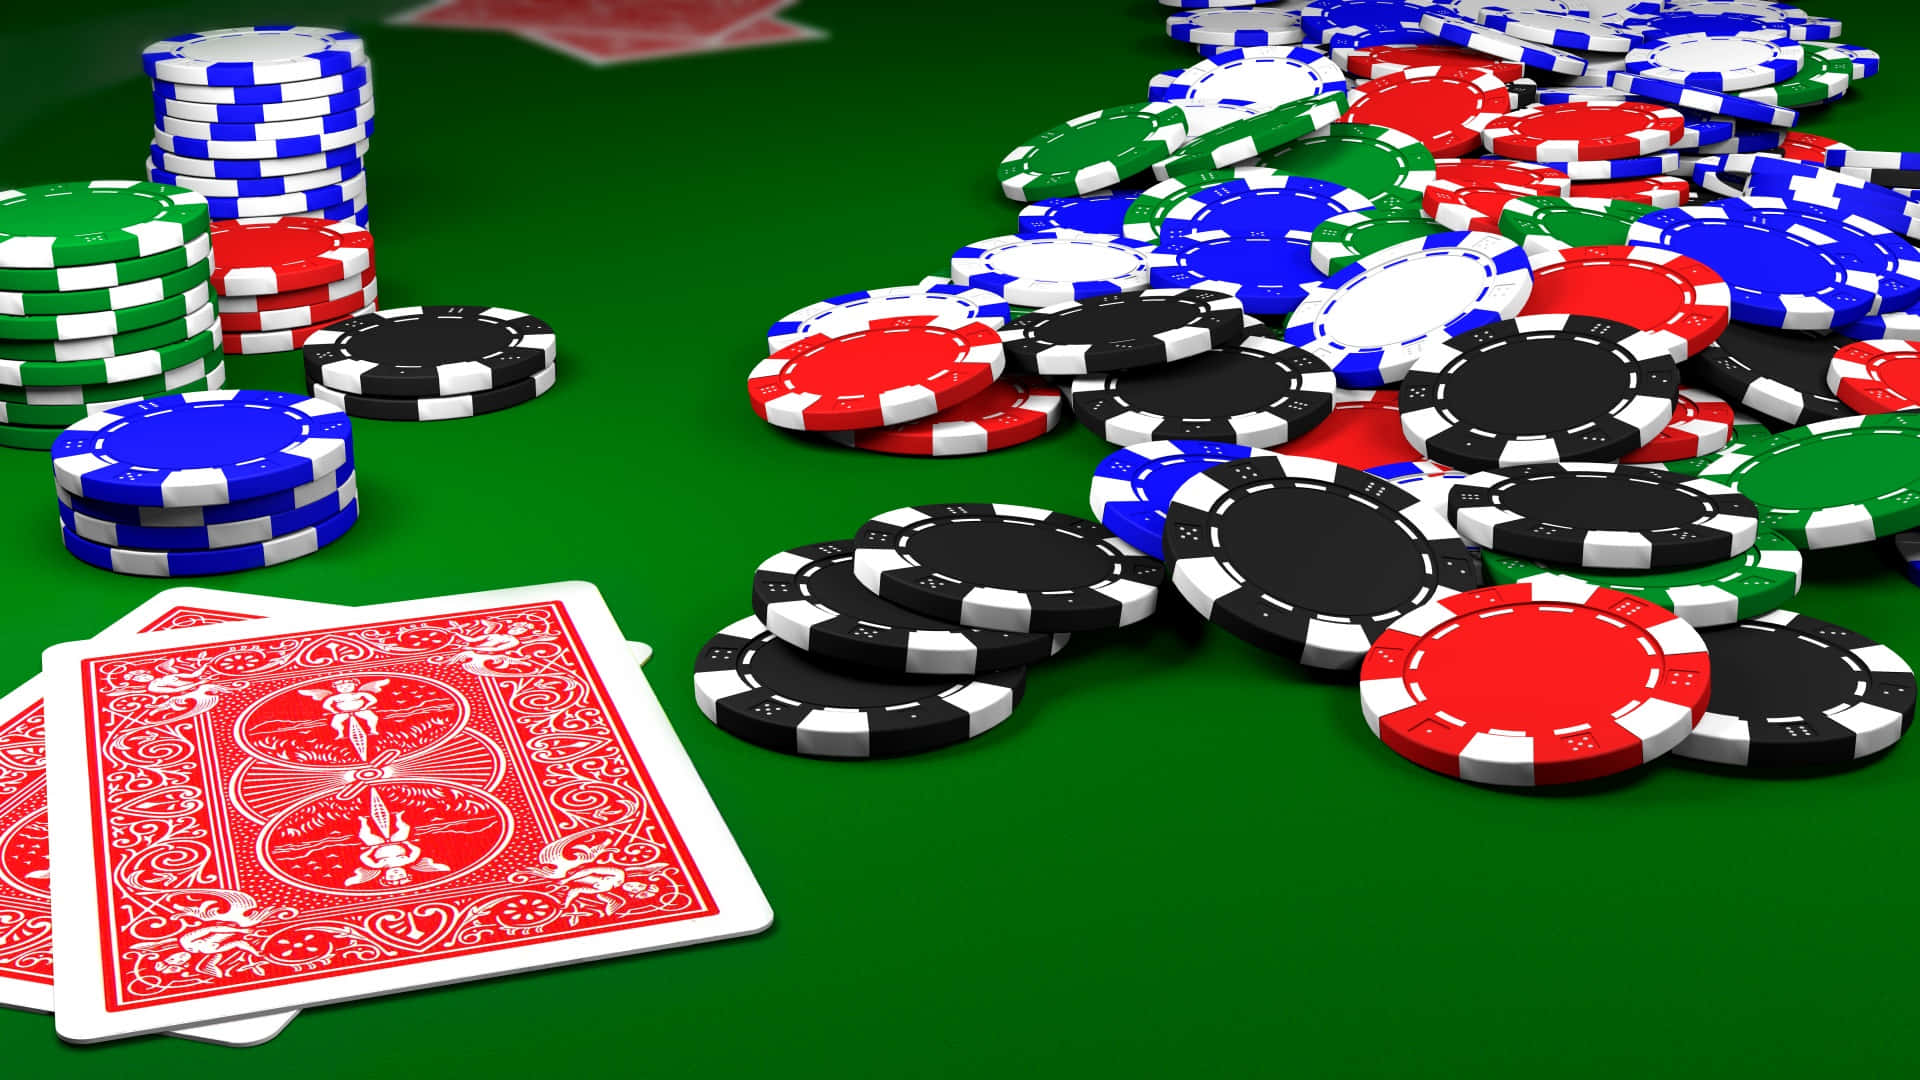 Atractivaconfiguración De Mesa De Póker En Un Sofisticado Entorno De Juegos.